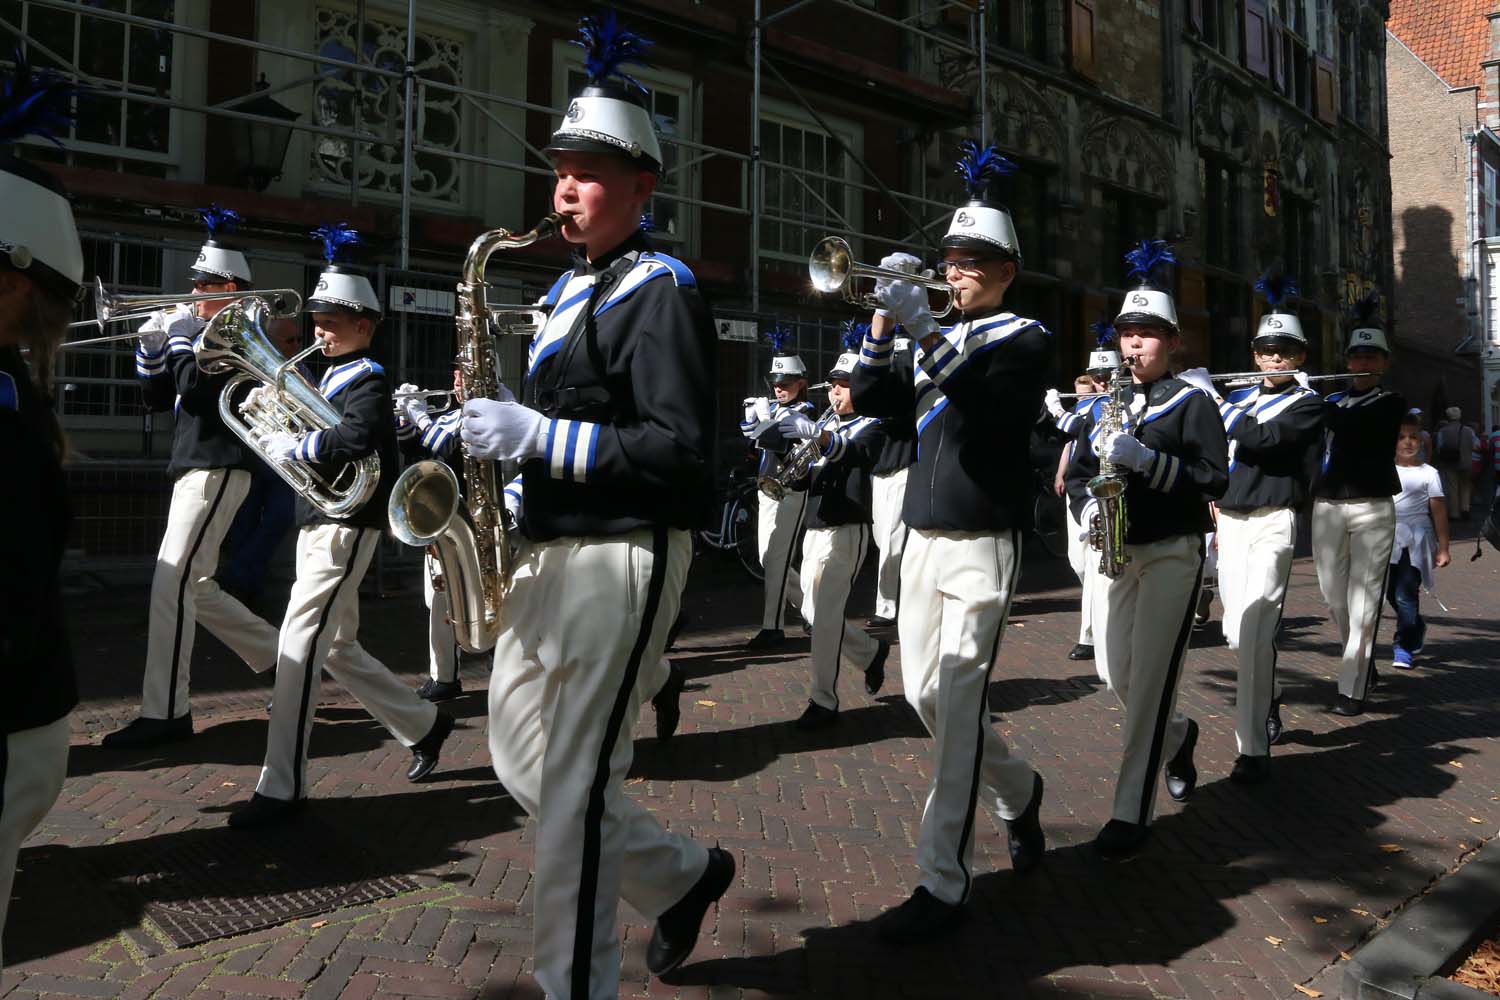 Streetparade Delft - 10 september 2016